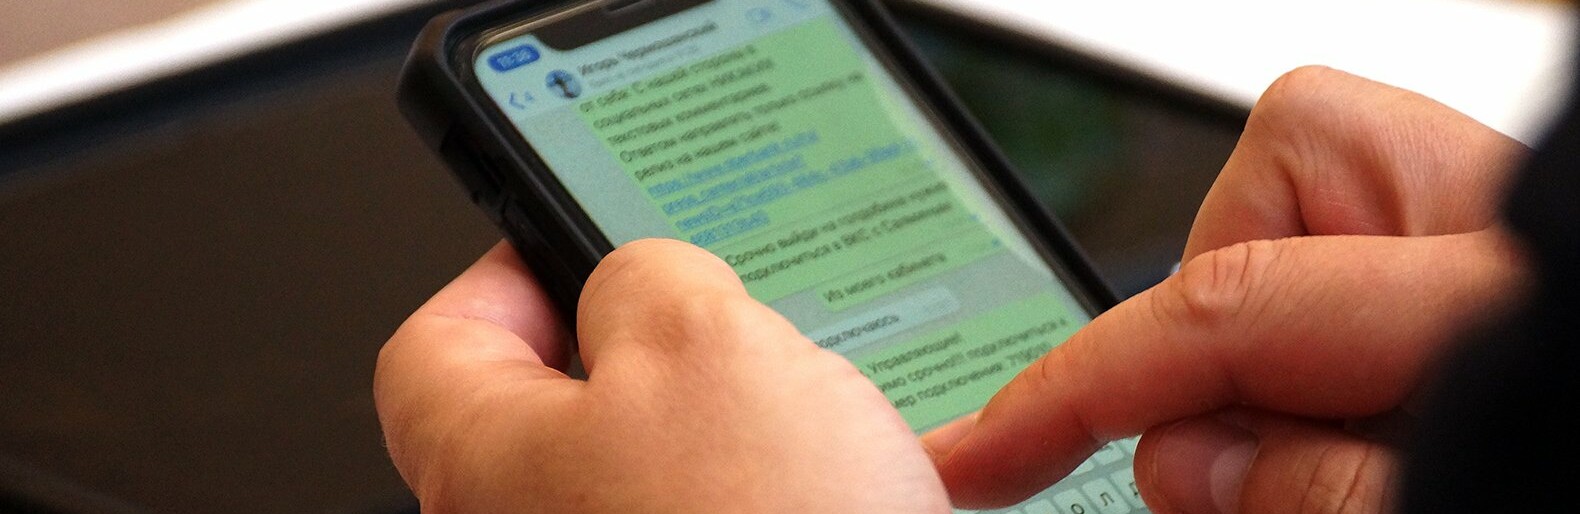 МегаФон: трафик абонентов Белгородской области в Telegram вырос в 5 раз